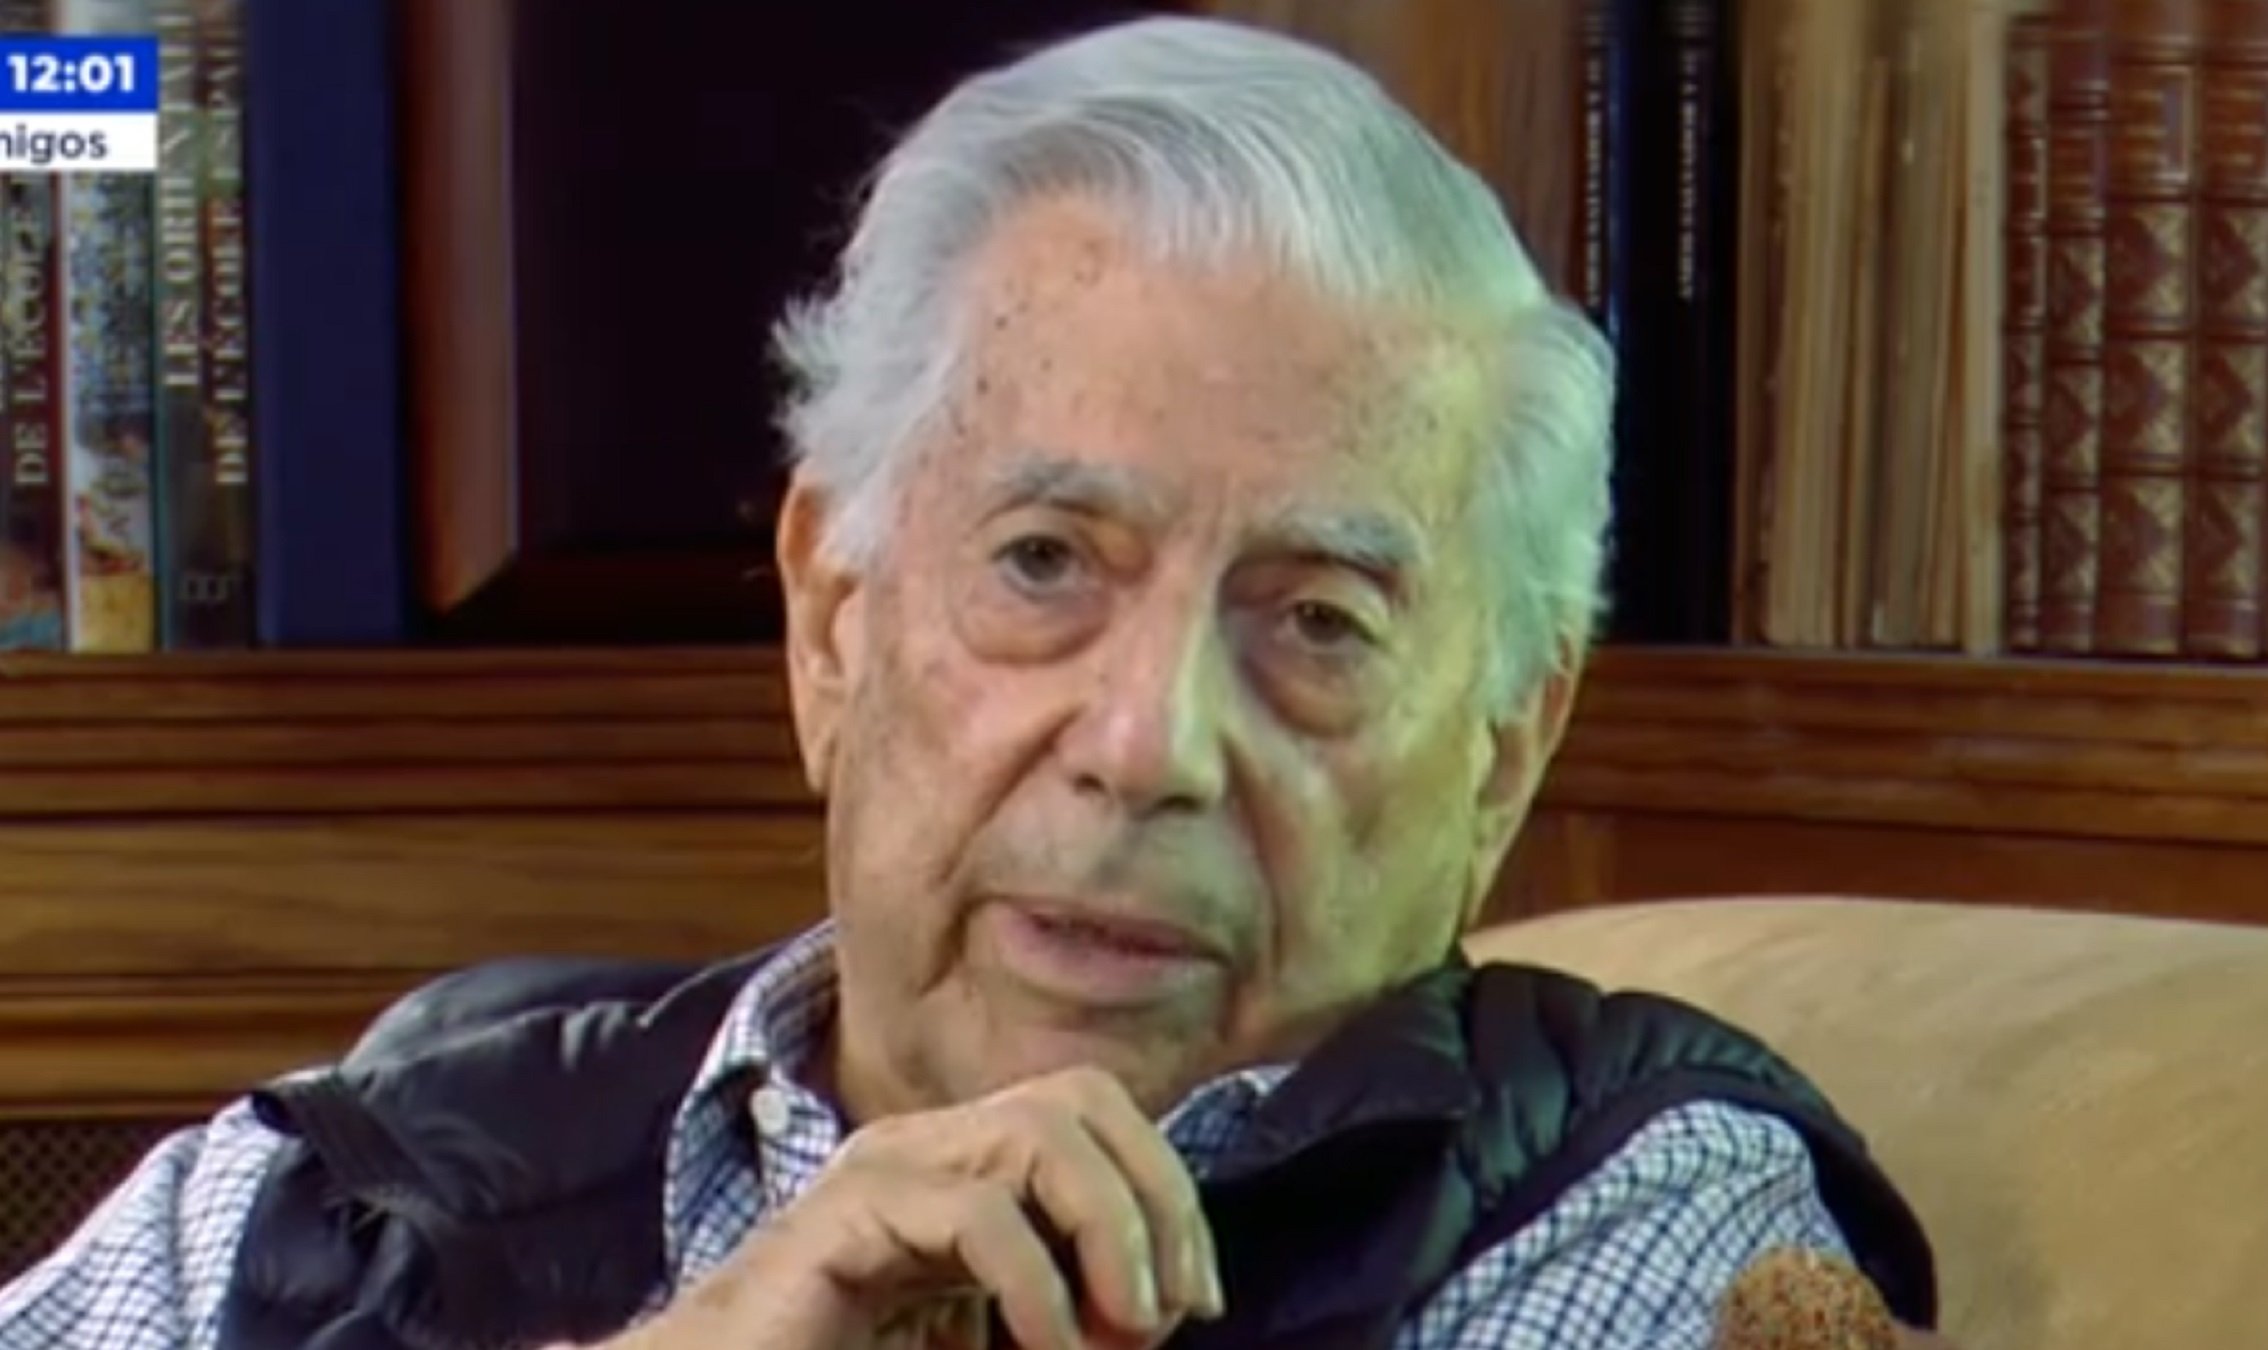 Destrossen Vargas Llosa, infecte, pel que ha dit a la Griso: "Sádico, patán"